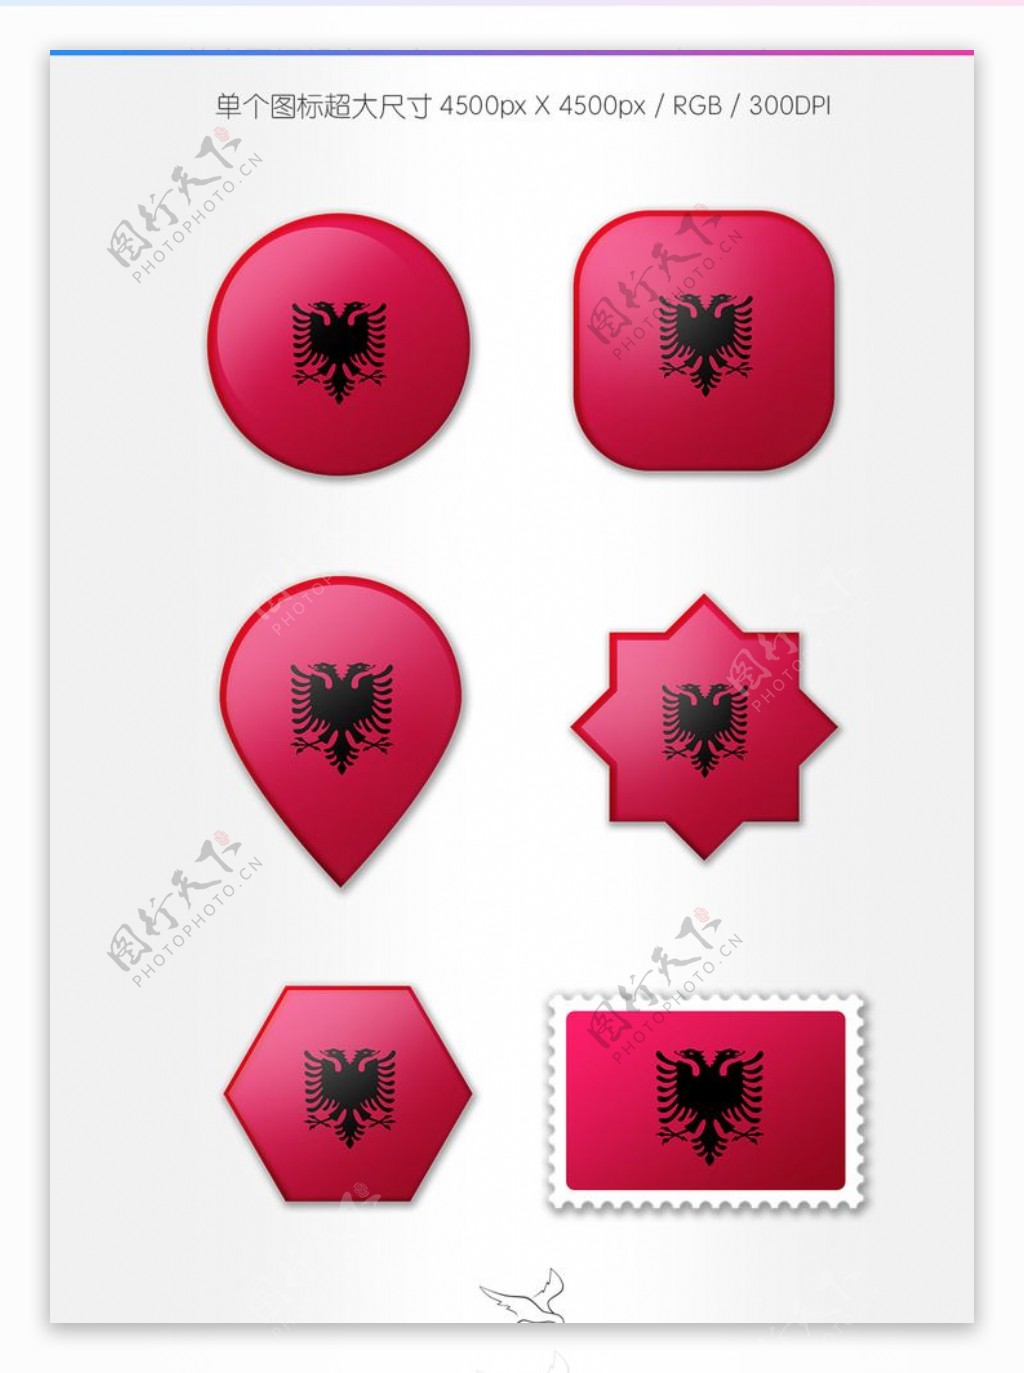 阿尔巴尼亚国旗图标